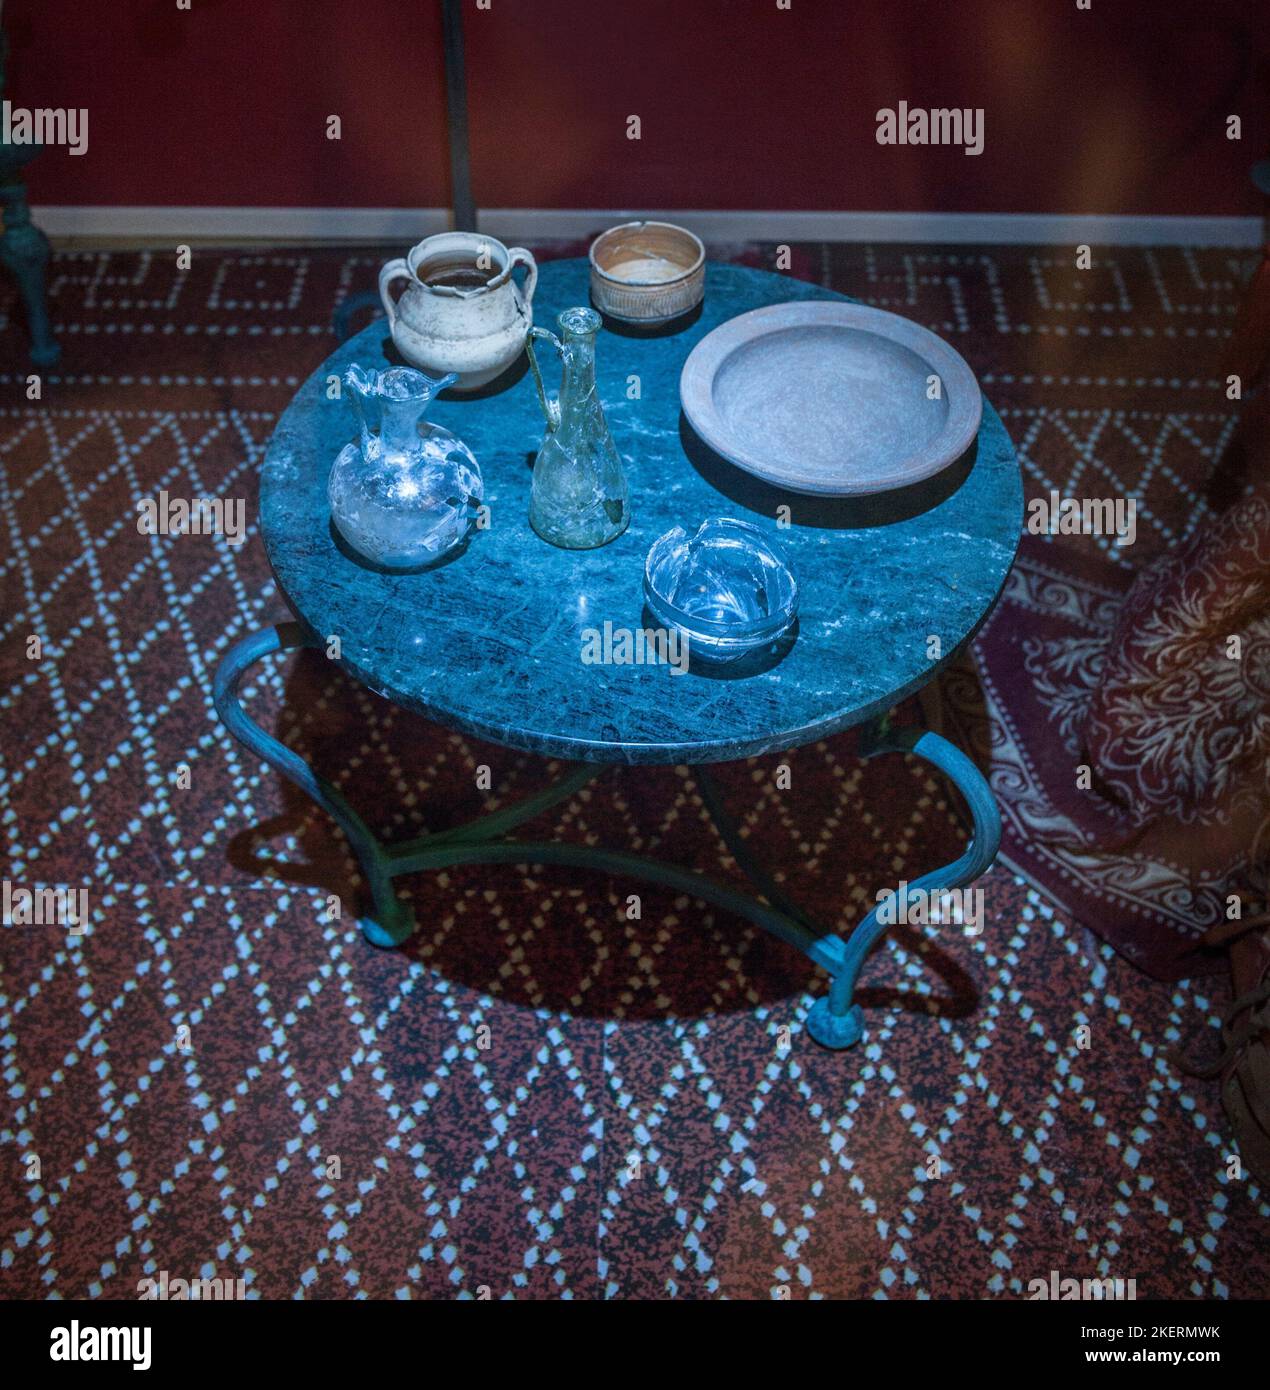 Almendralejo, Spanien - 26. Januar 2018: Römischer Tisch mit Glas- und Tongefäßen zum Weinreifen. Weinwissenschaftliches Museum von Almendralejo, Spanien. Stockfoto